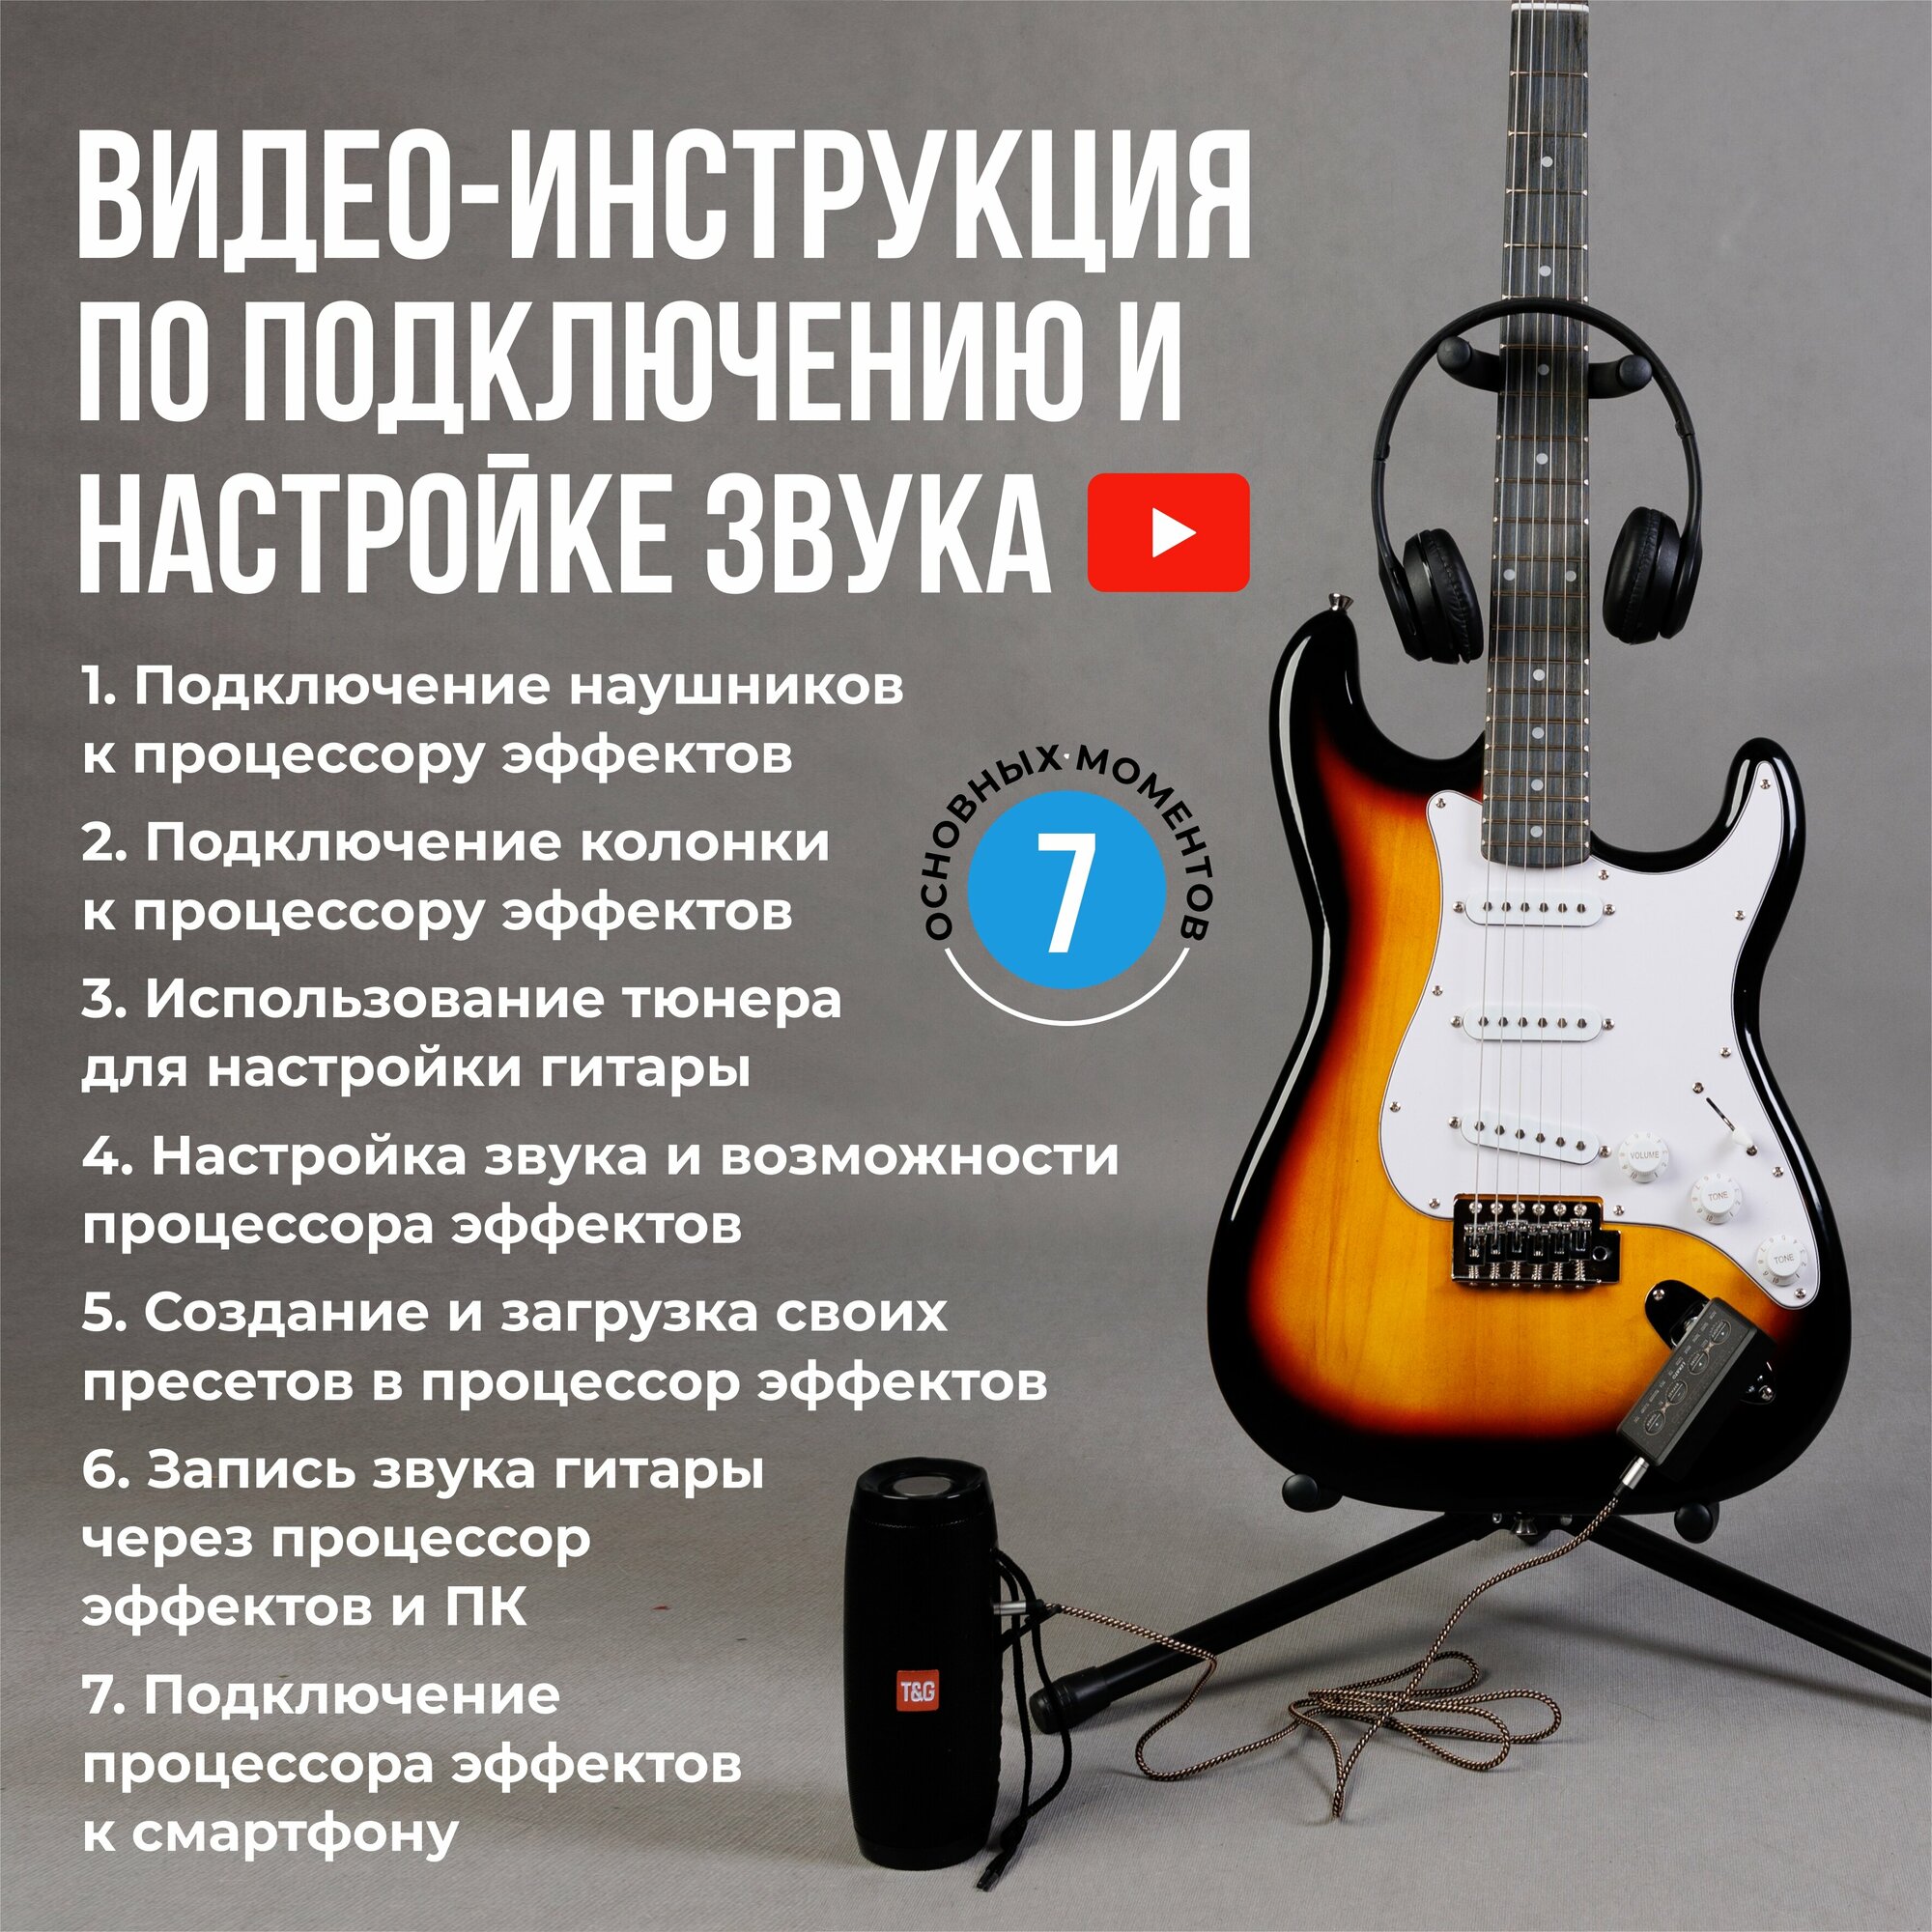 Набор гитариста 12 в 1 (электрогитара процессор эффектов наушники колонка аксессуары)